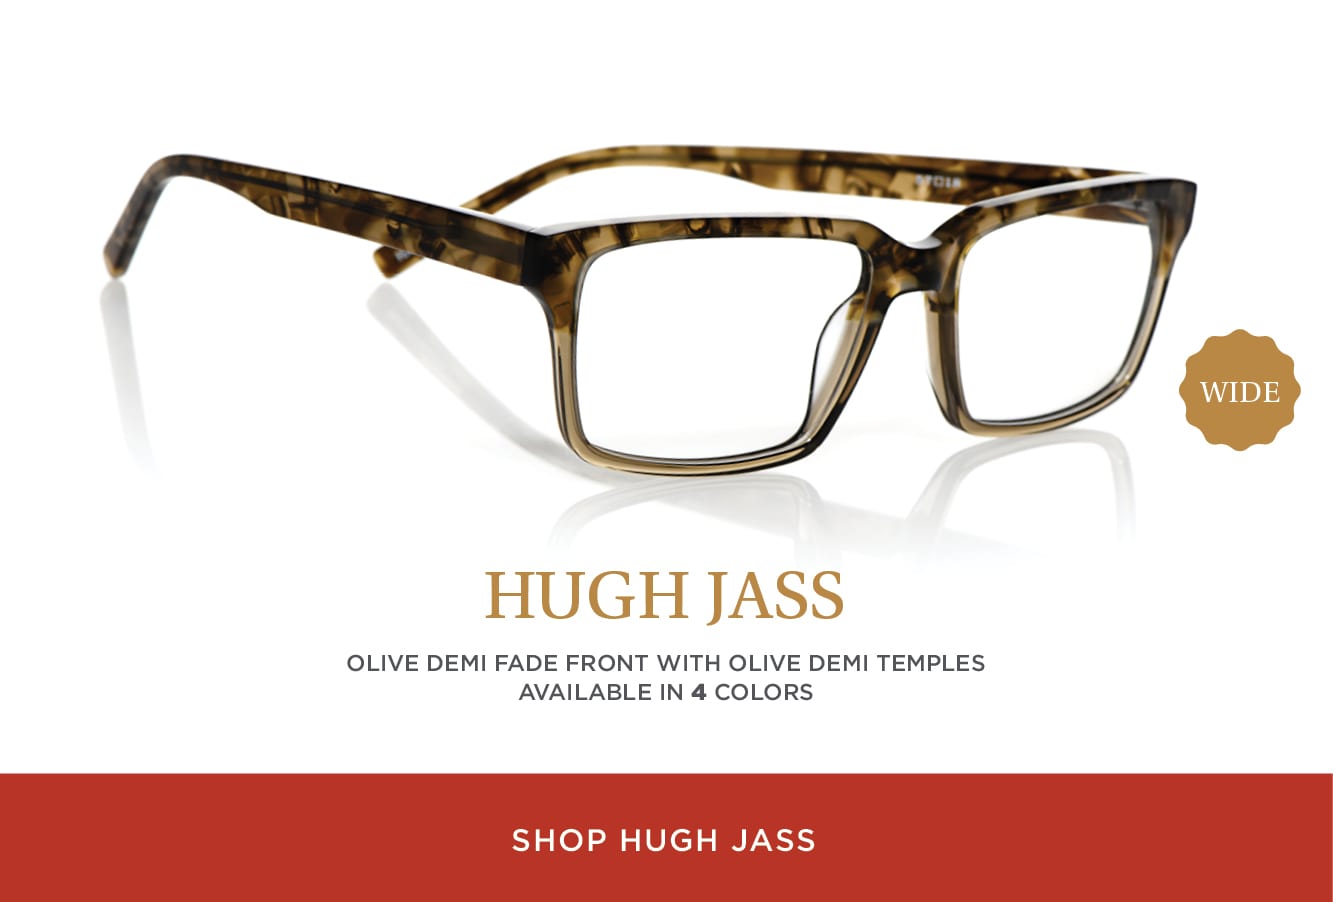 Shop Hugh Jass